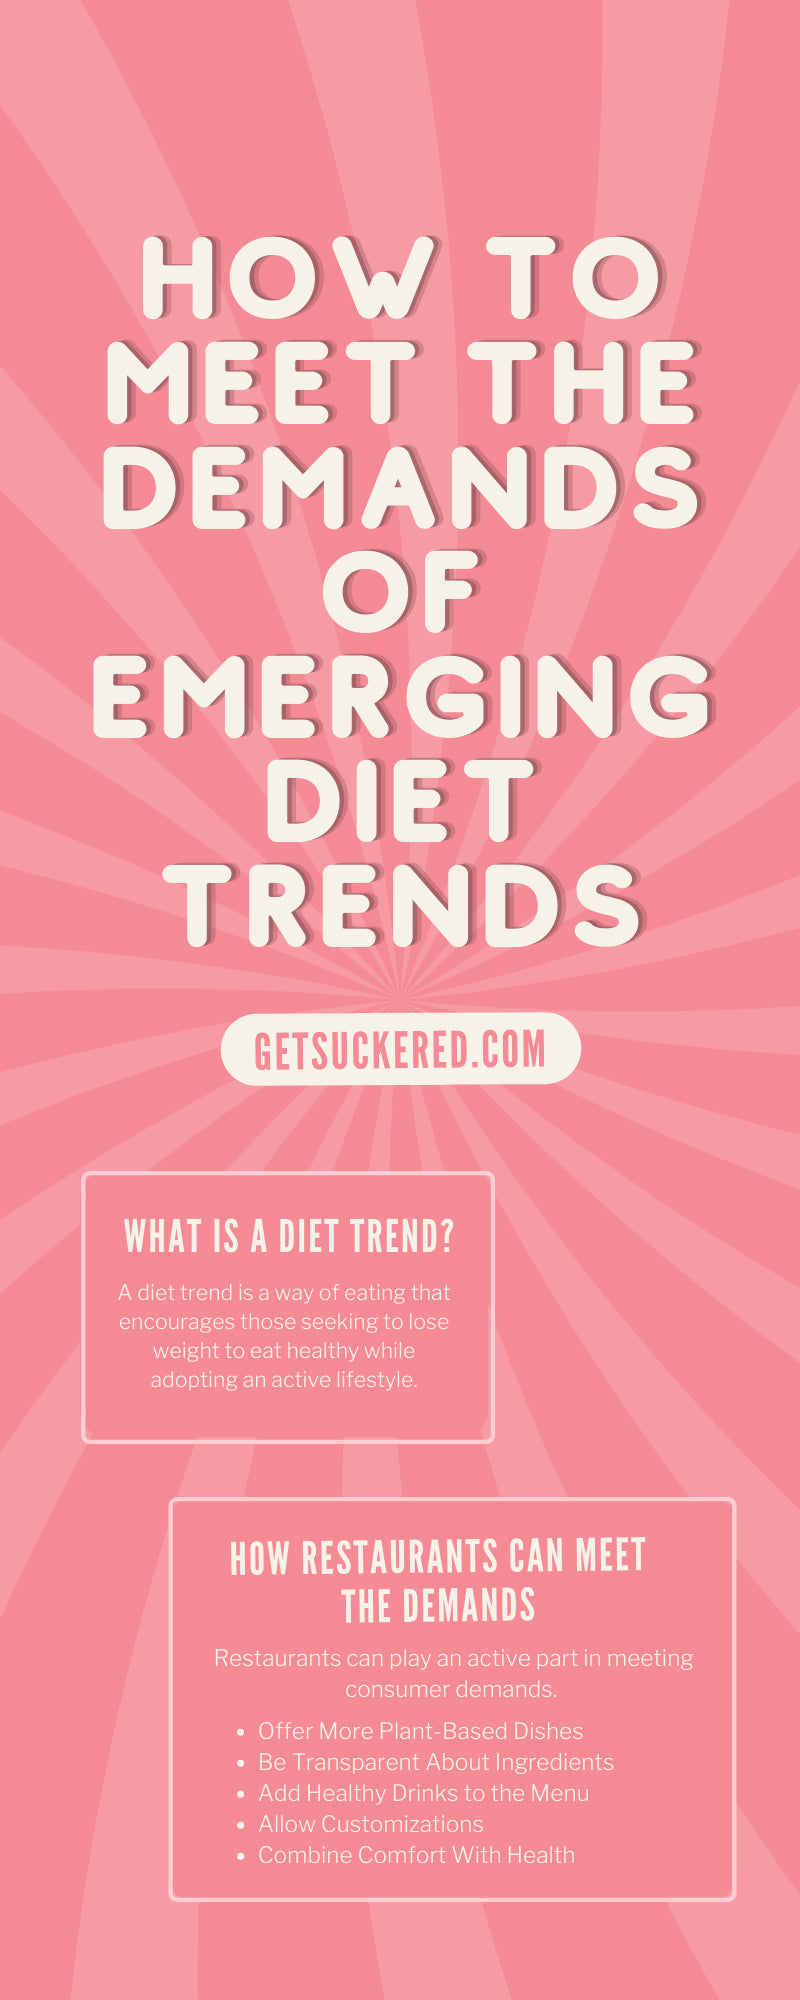 How To Meet the Demands of Emerging Diet Trends